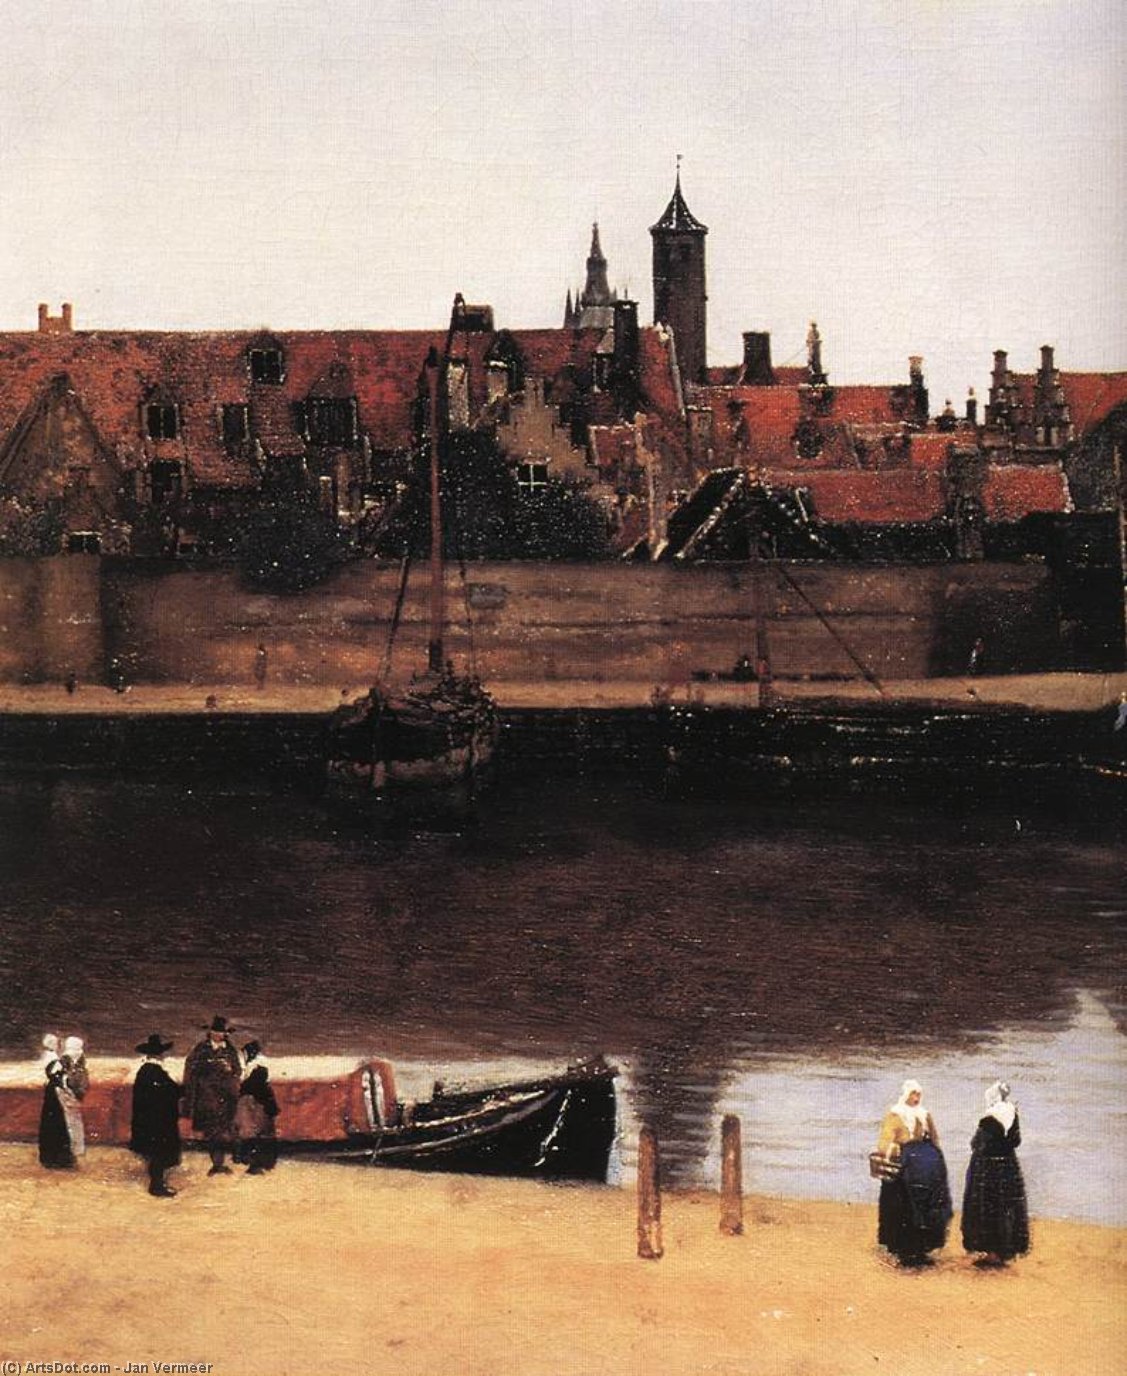 Wikioo.org – La Enciclopedia de las Bellas Artes - Pintura, Obras de arte de Jan Vermeer - vista de Porcelana de delft  Detalle